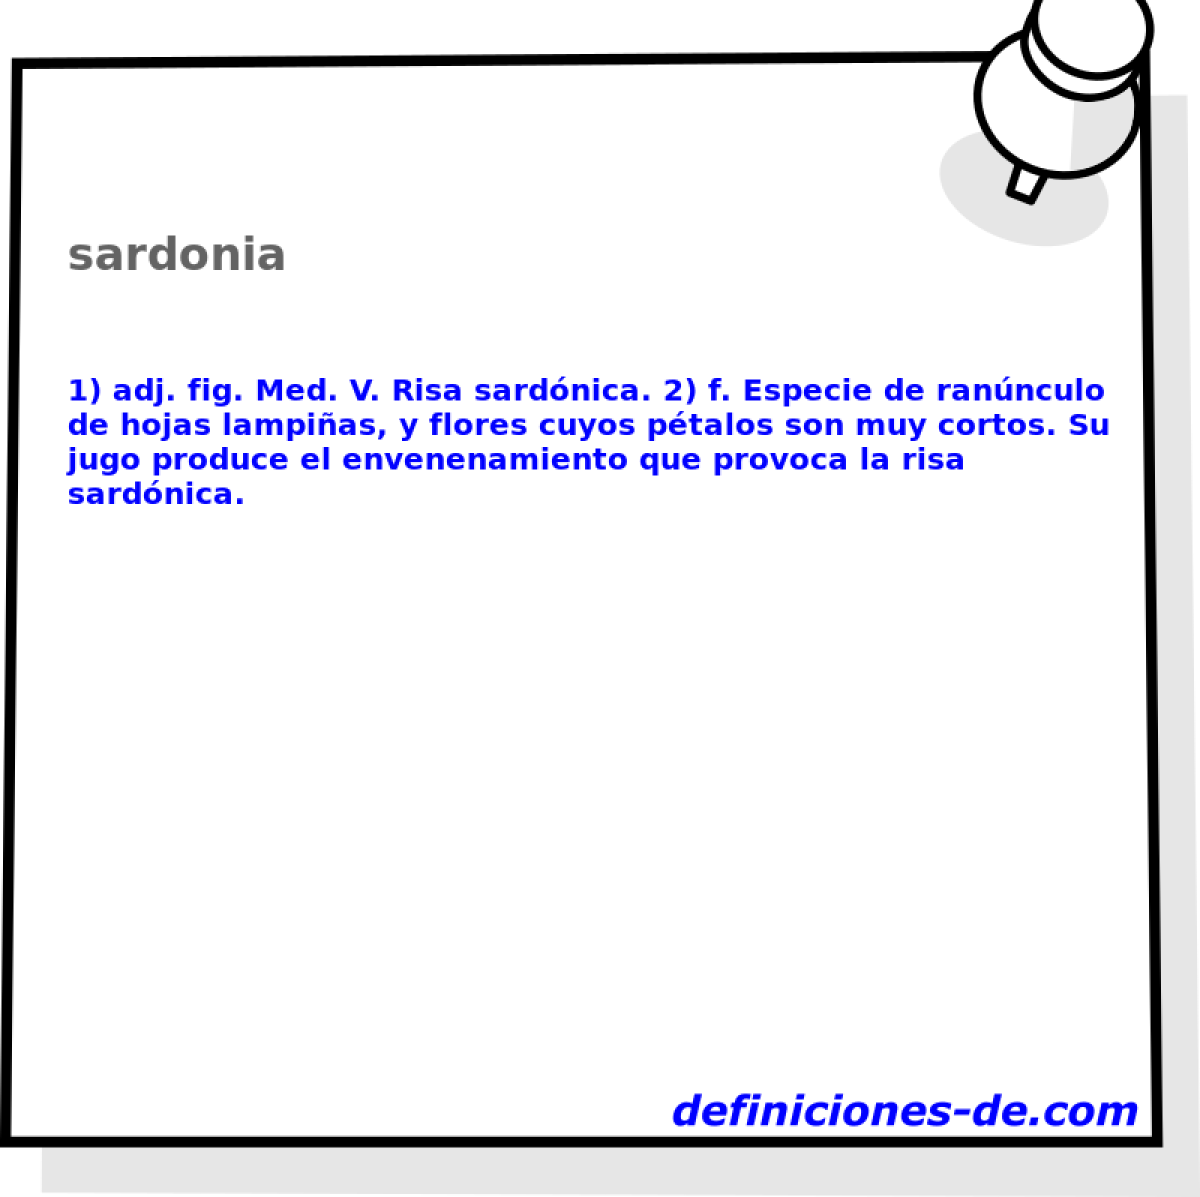 sardonia 